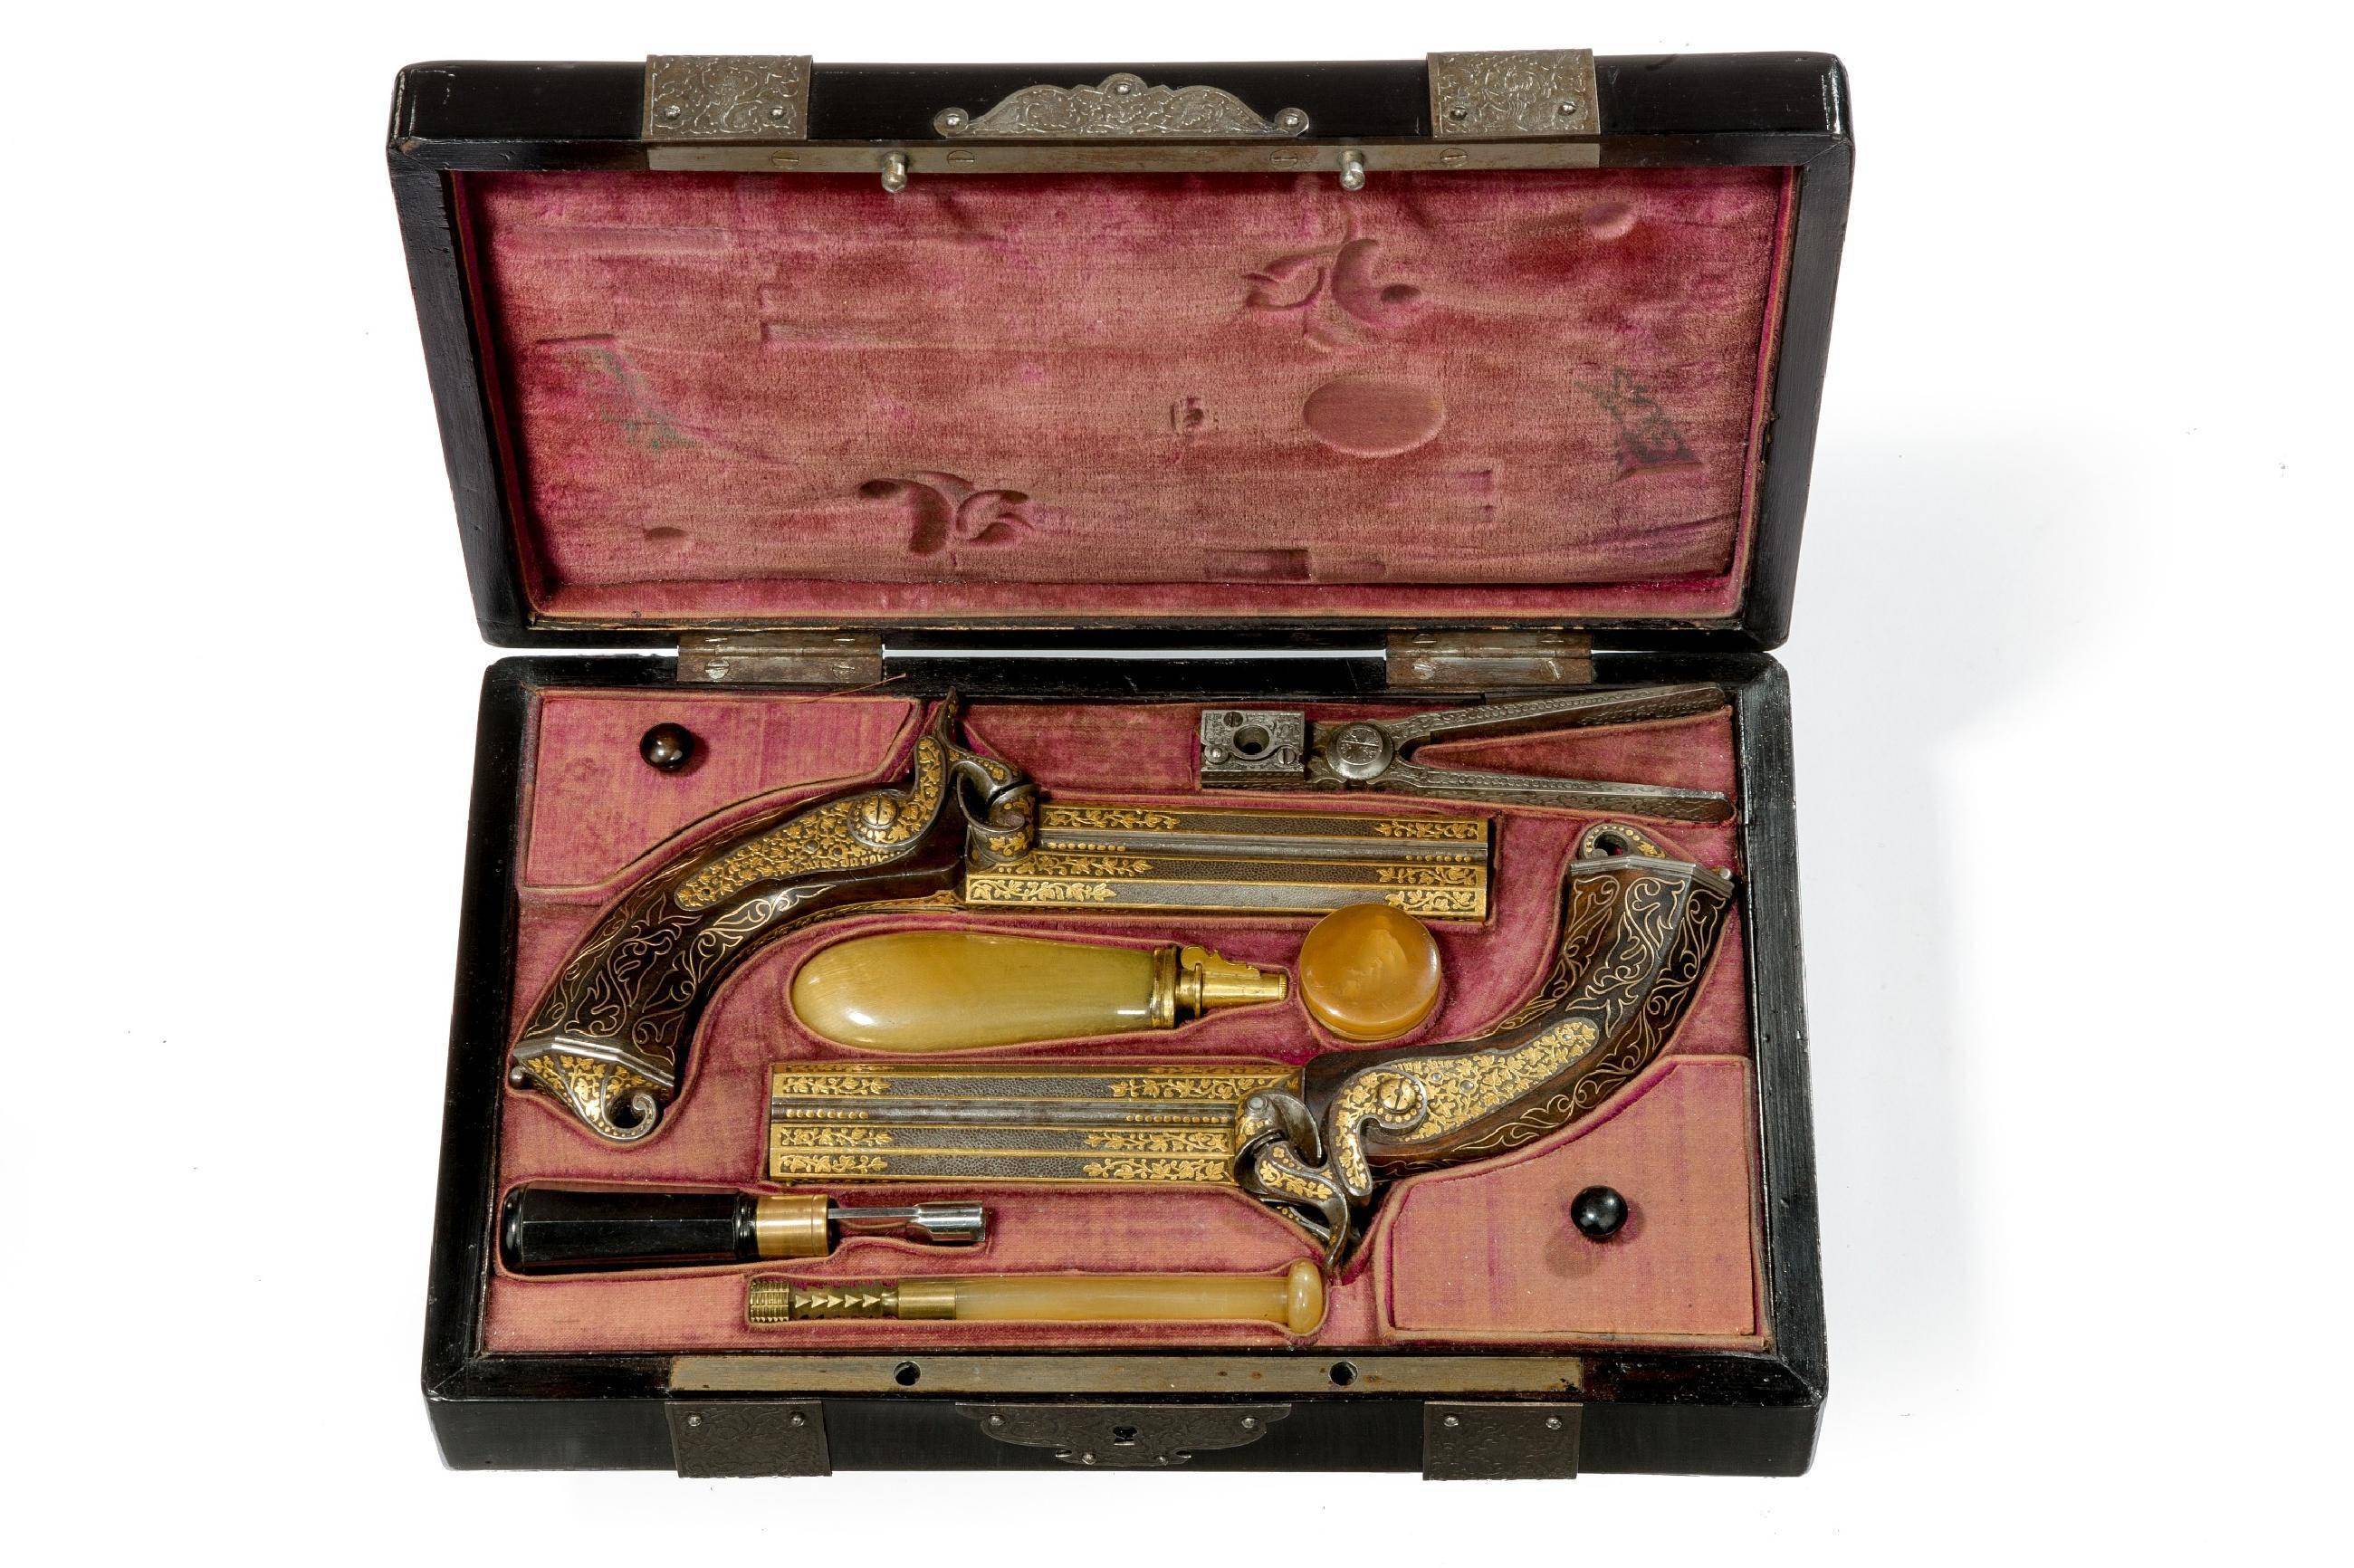 1847年法国制造的双管火帽手枪,由法王路易·菲利普御用枪械工匠制造.